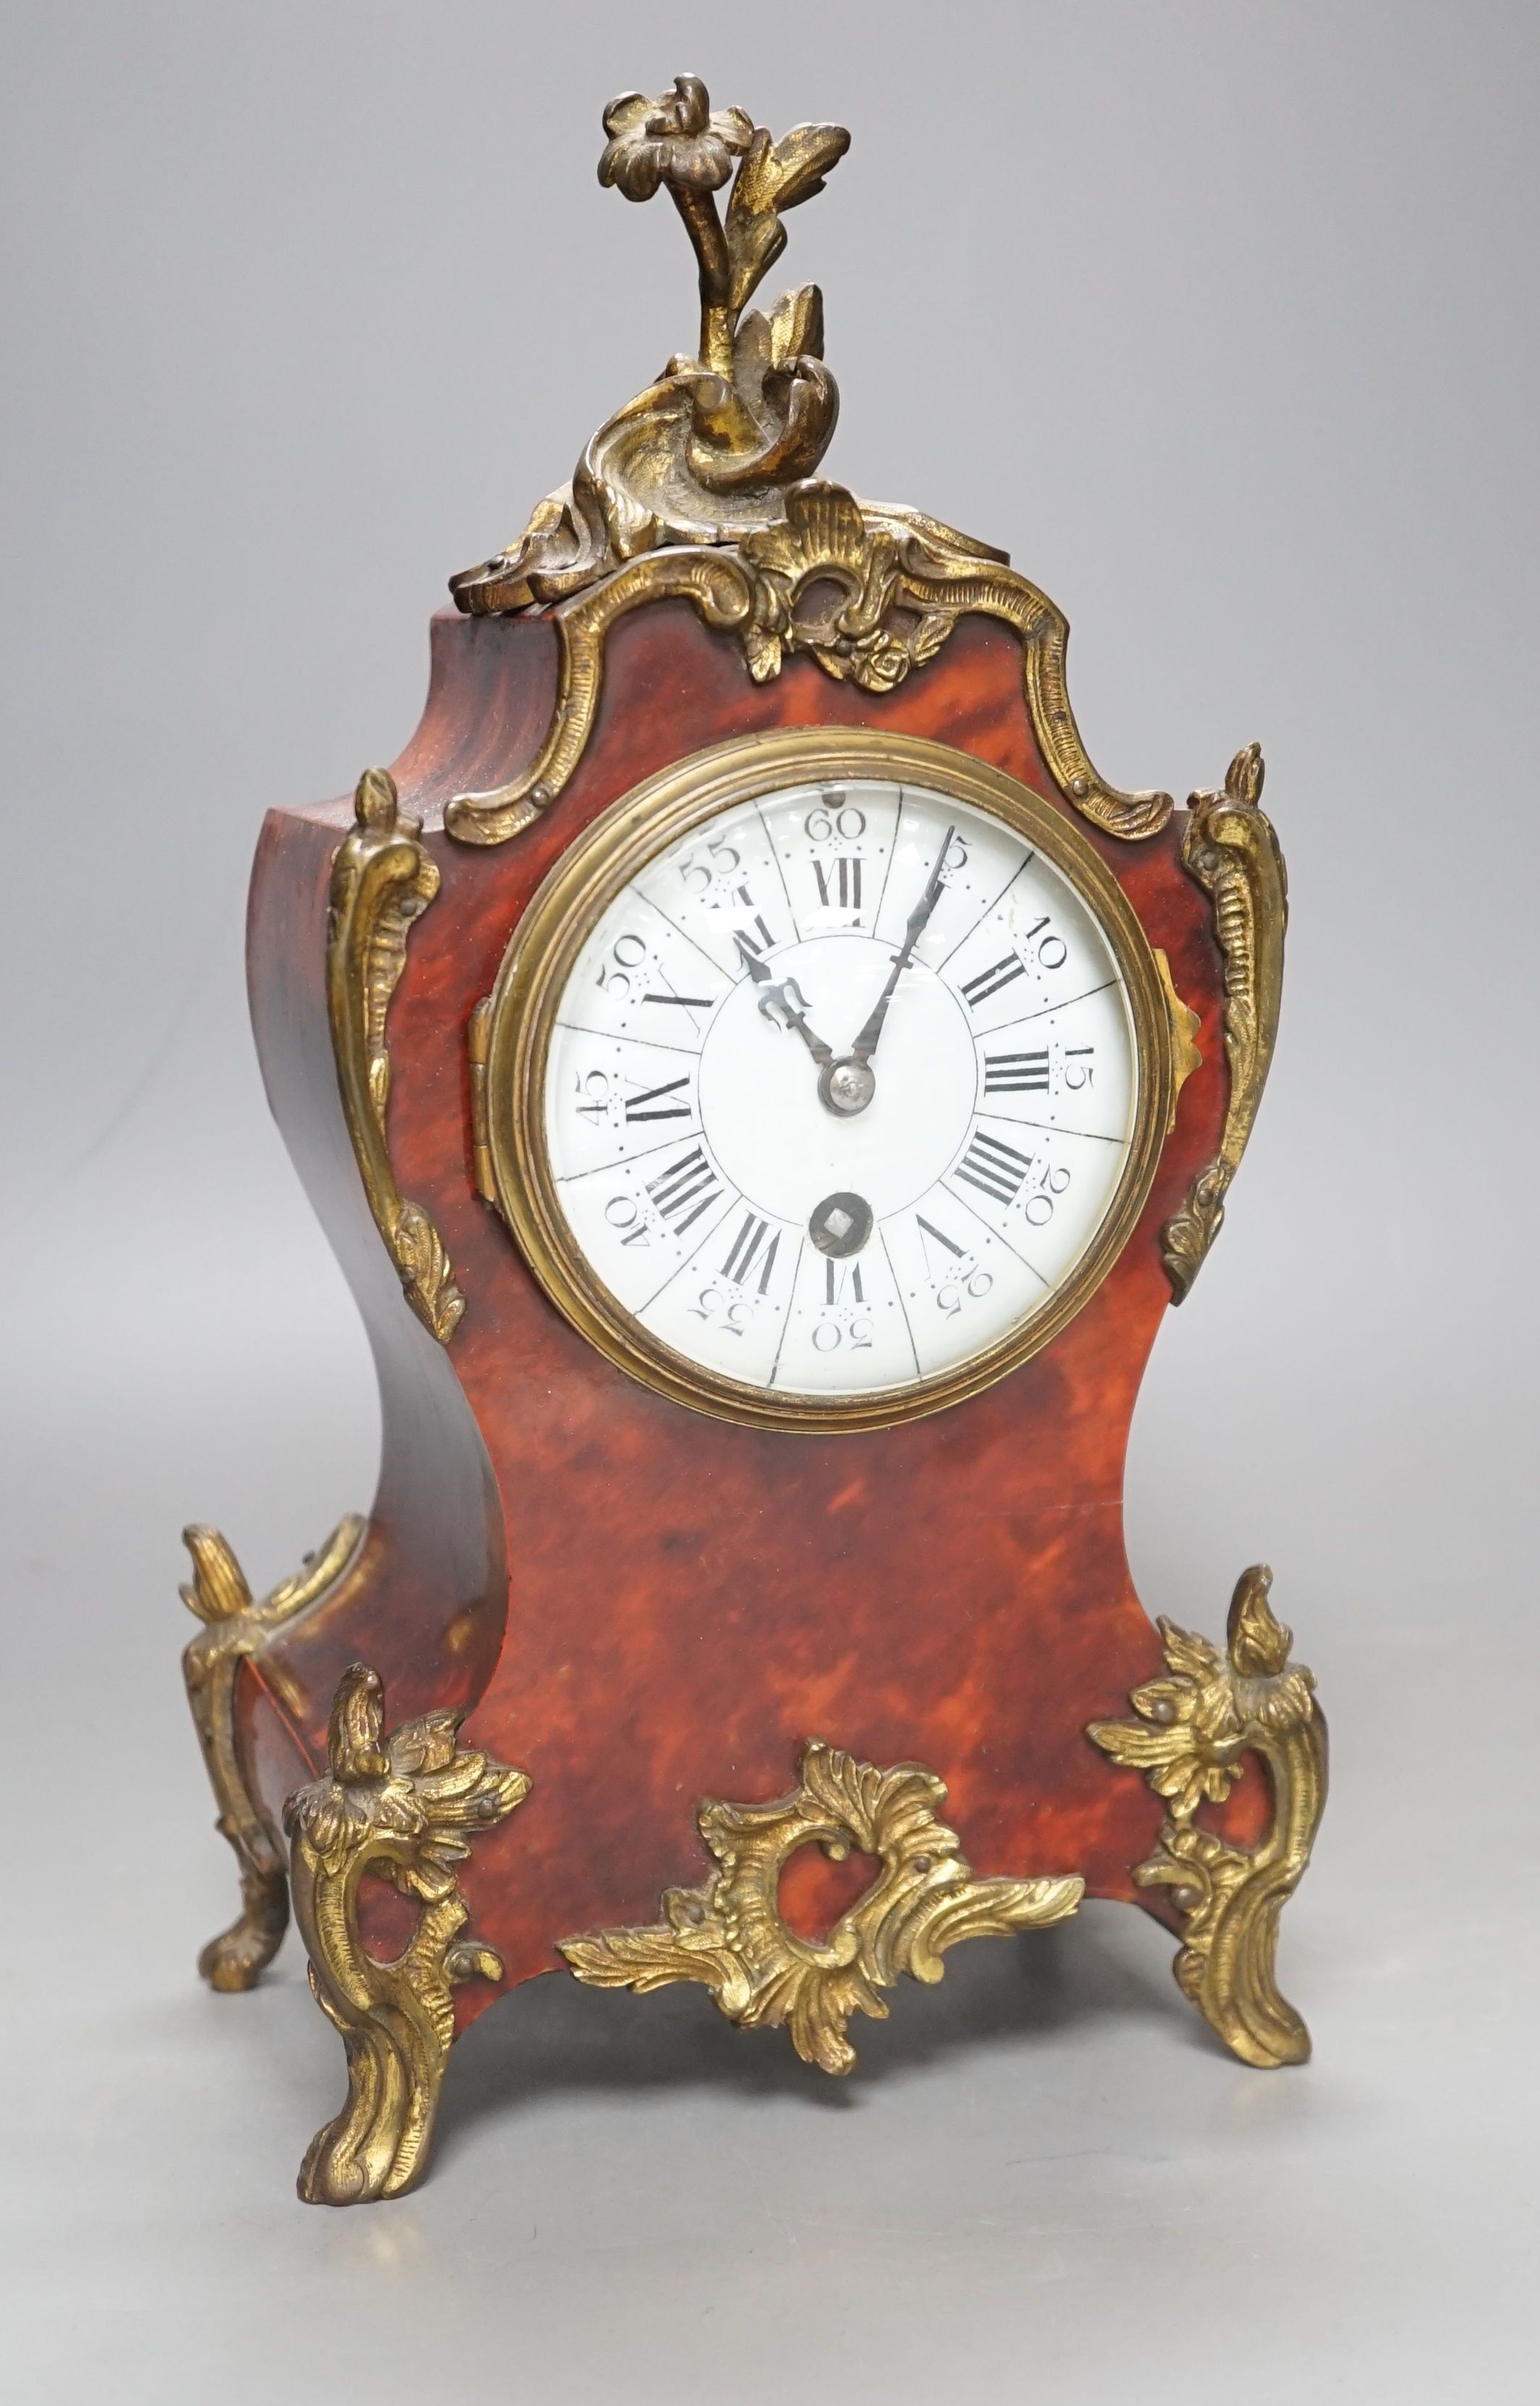 19th century French tortoiseshell veneered mantel clock, 31cms high.